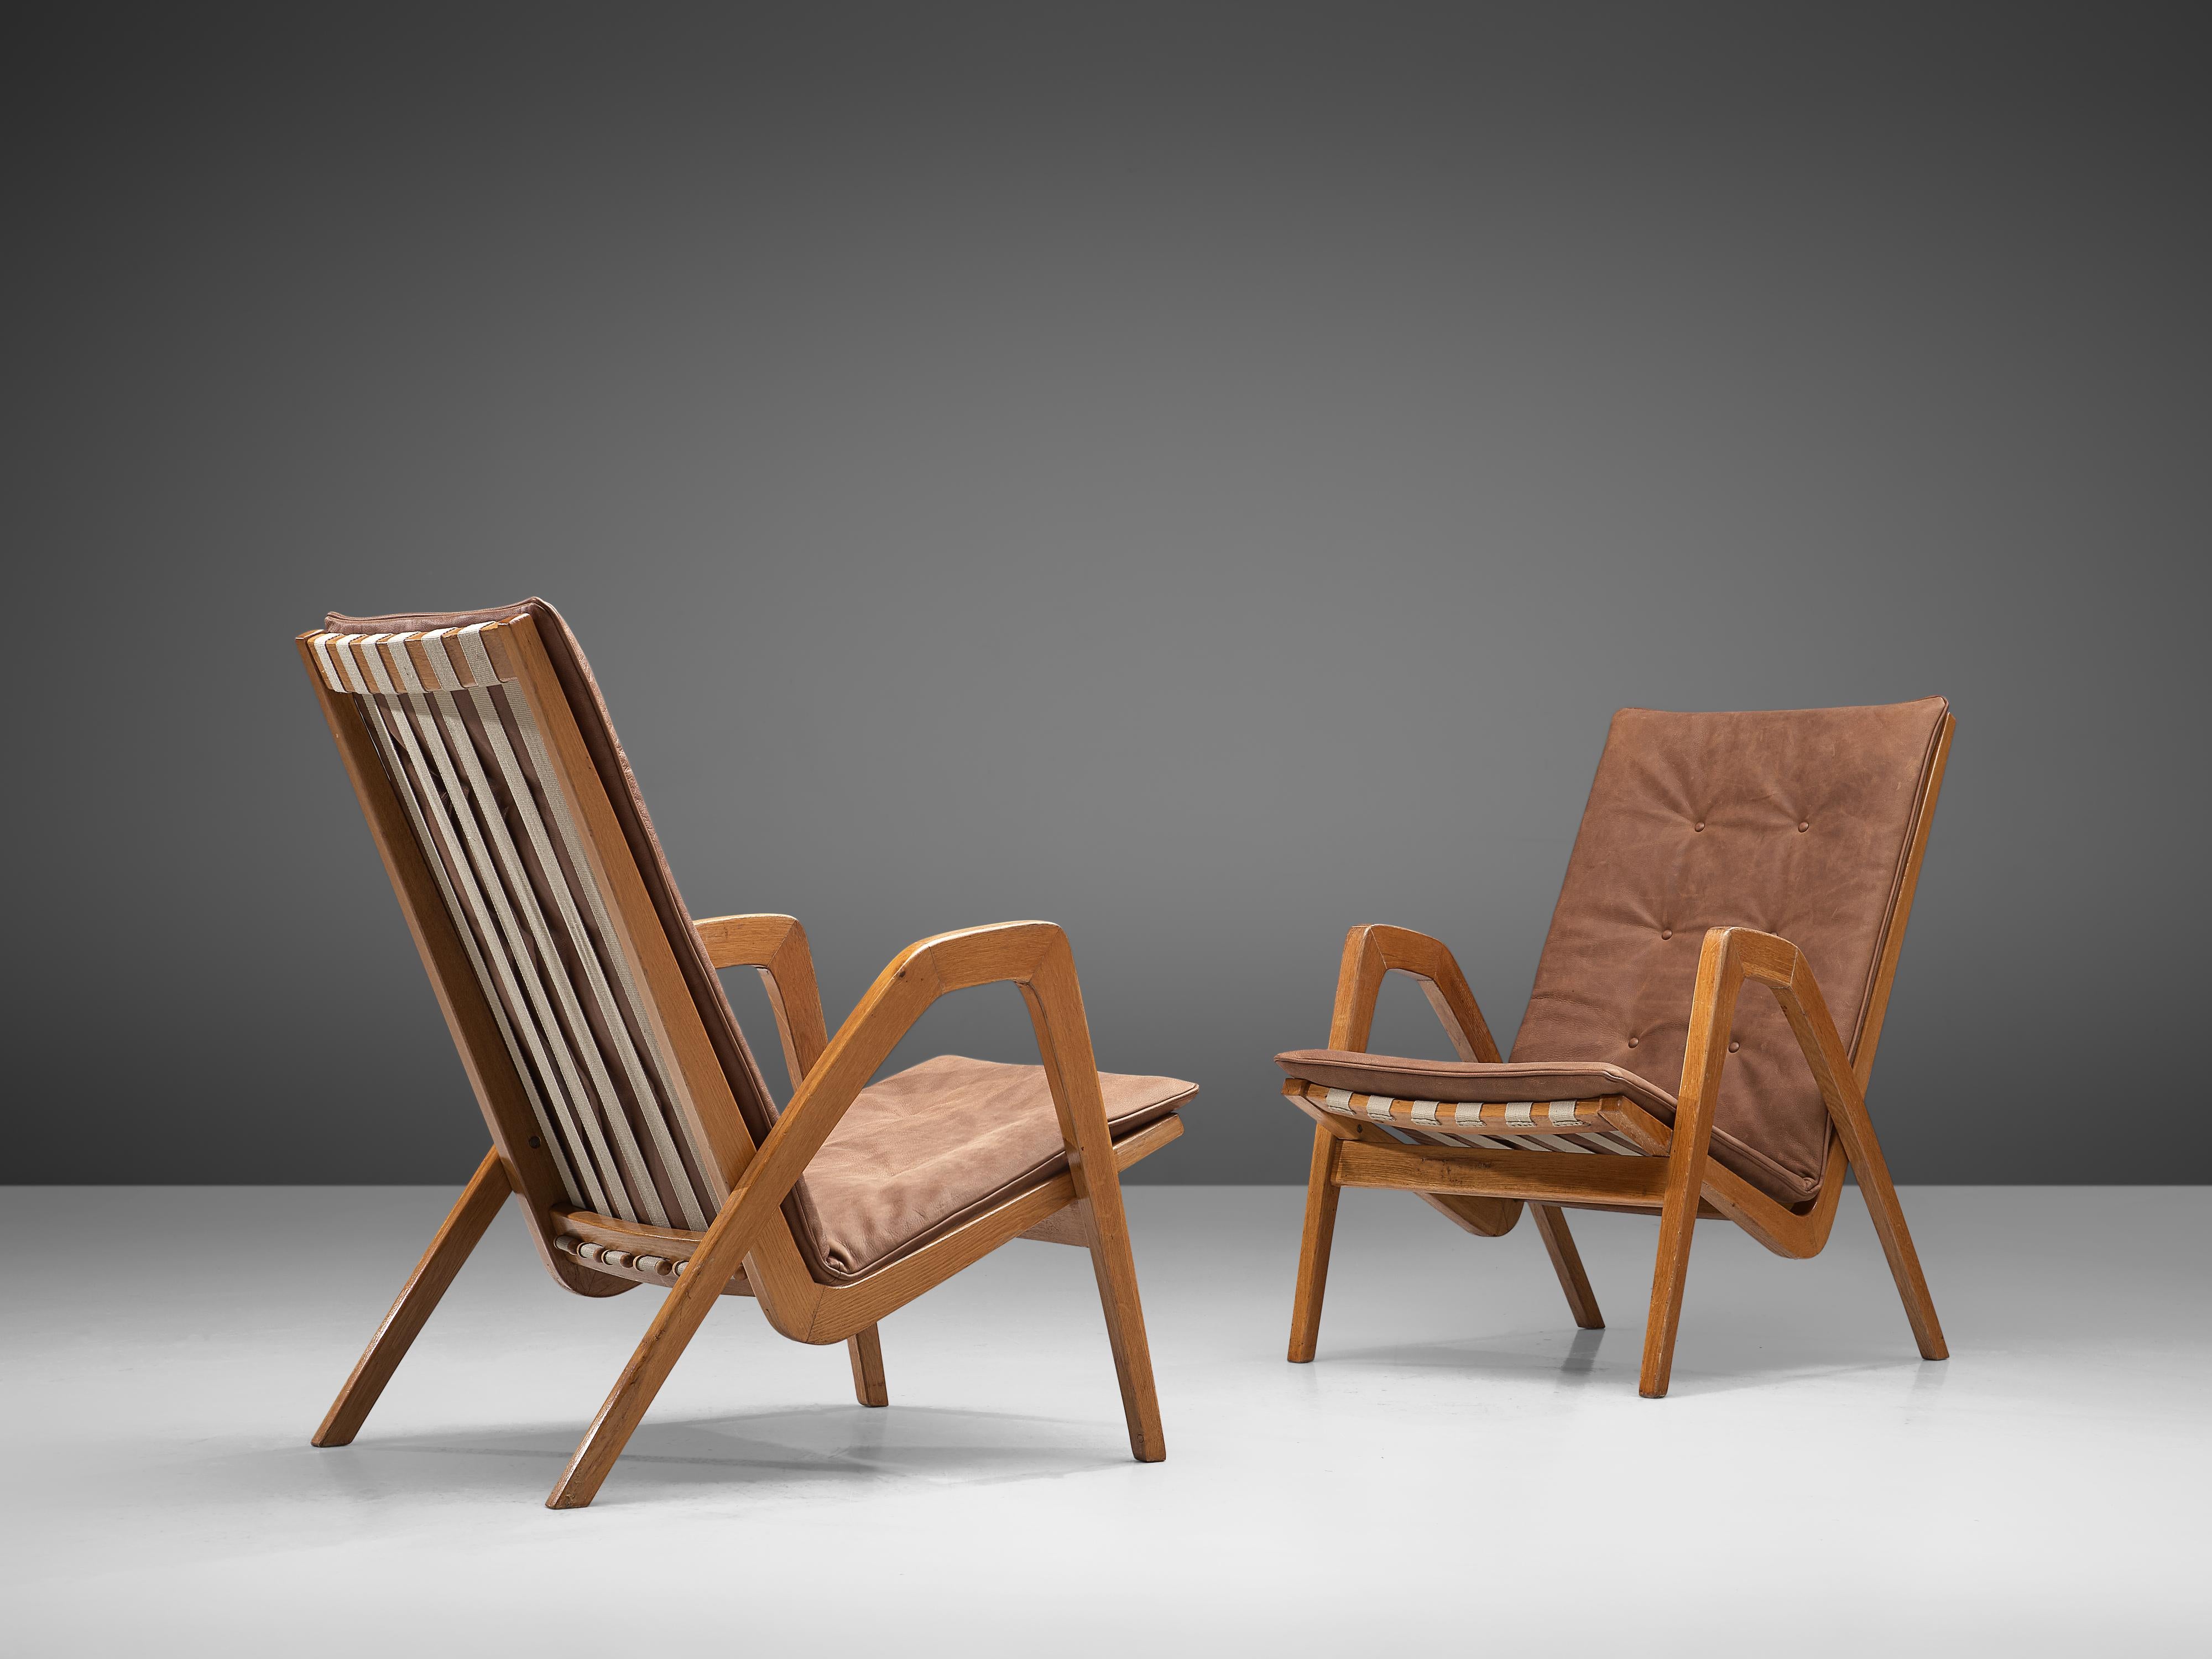 Paire de fauteuils, cuir cognac, bois, Europe, années 1940

Ces fauteuils ondulés et élégants sont dotés de coussins en cuir de haute qualité de couleur camel qui sont sectionnés. Les coussins soulignent le caractère original et ondulé de ces